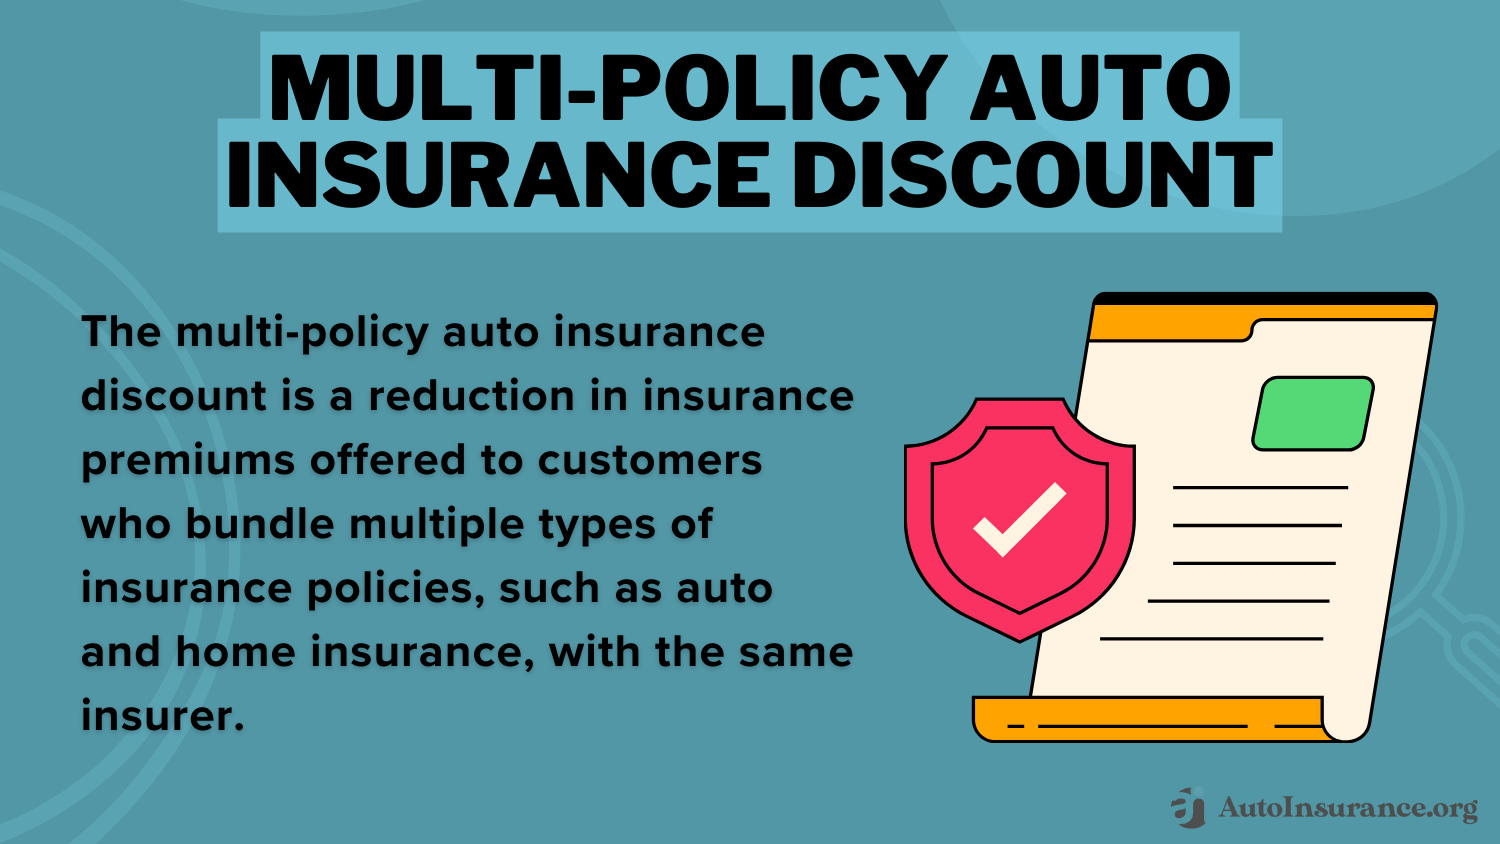 State Farm Auto Insurance Discounts: Multi-Policy Auto Insurance Discount Definition Card